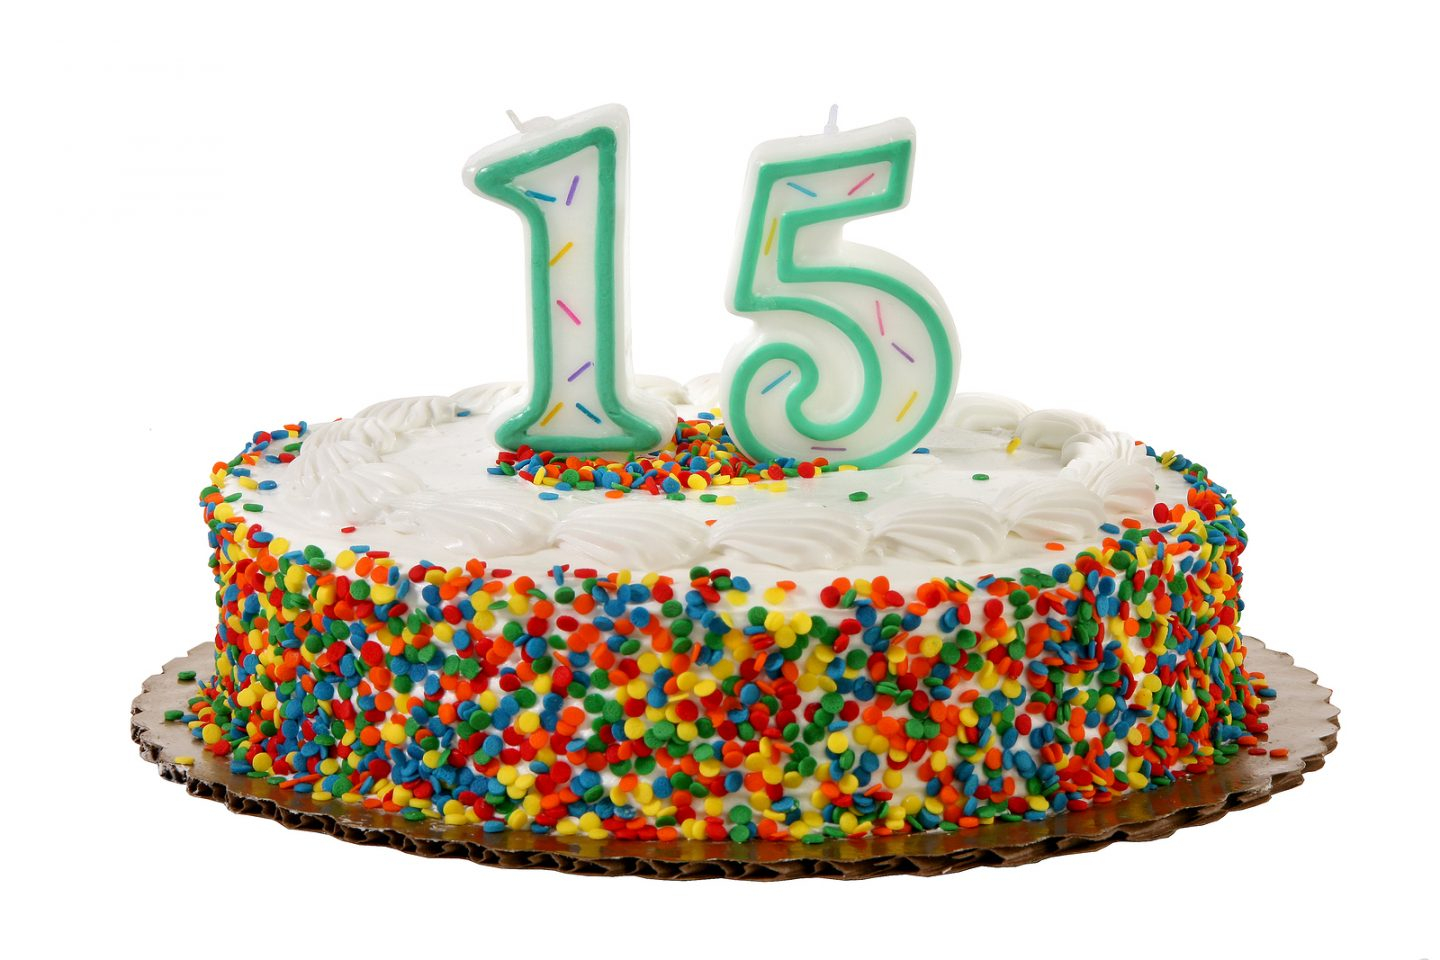 15 Birthday Cake 15 Birthday Cakes 15th Birthday Cake Images Happy Birthday Cake